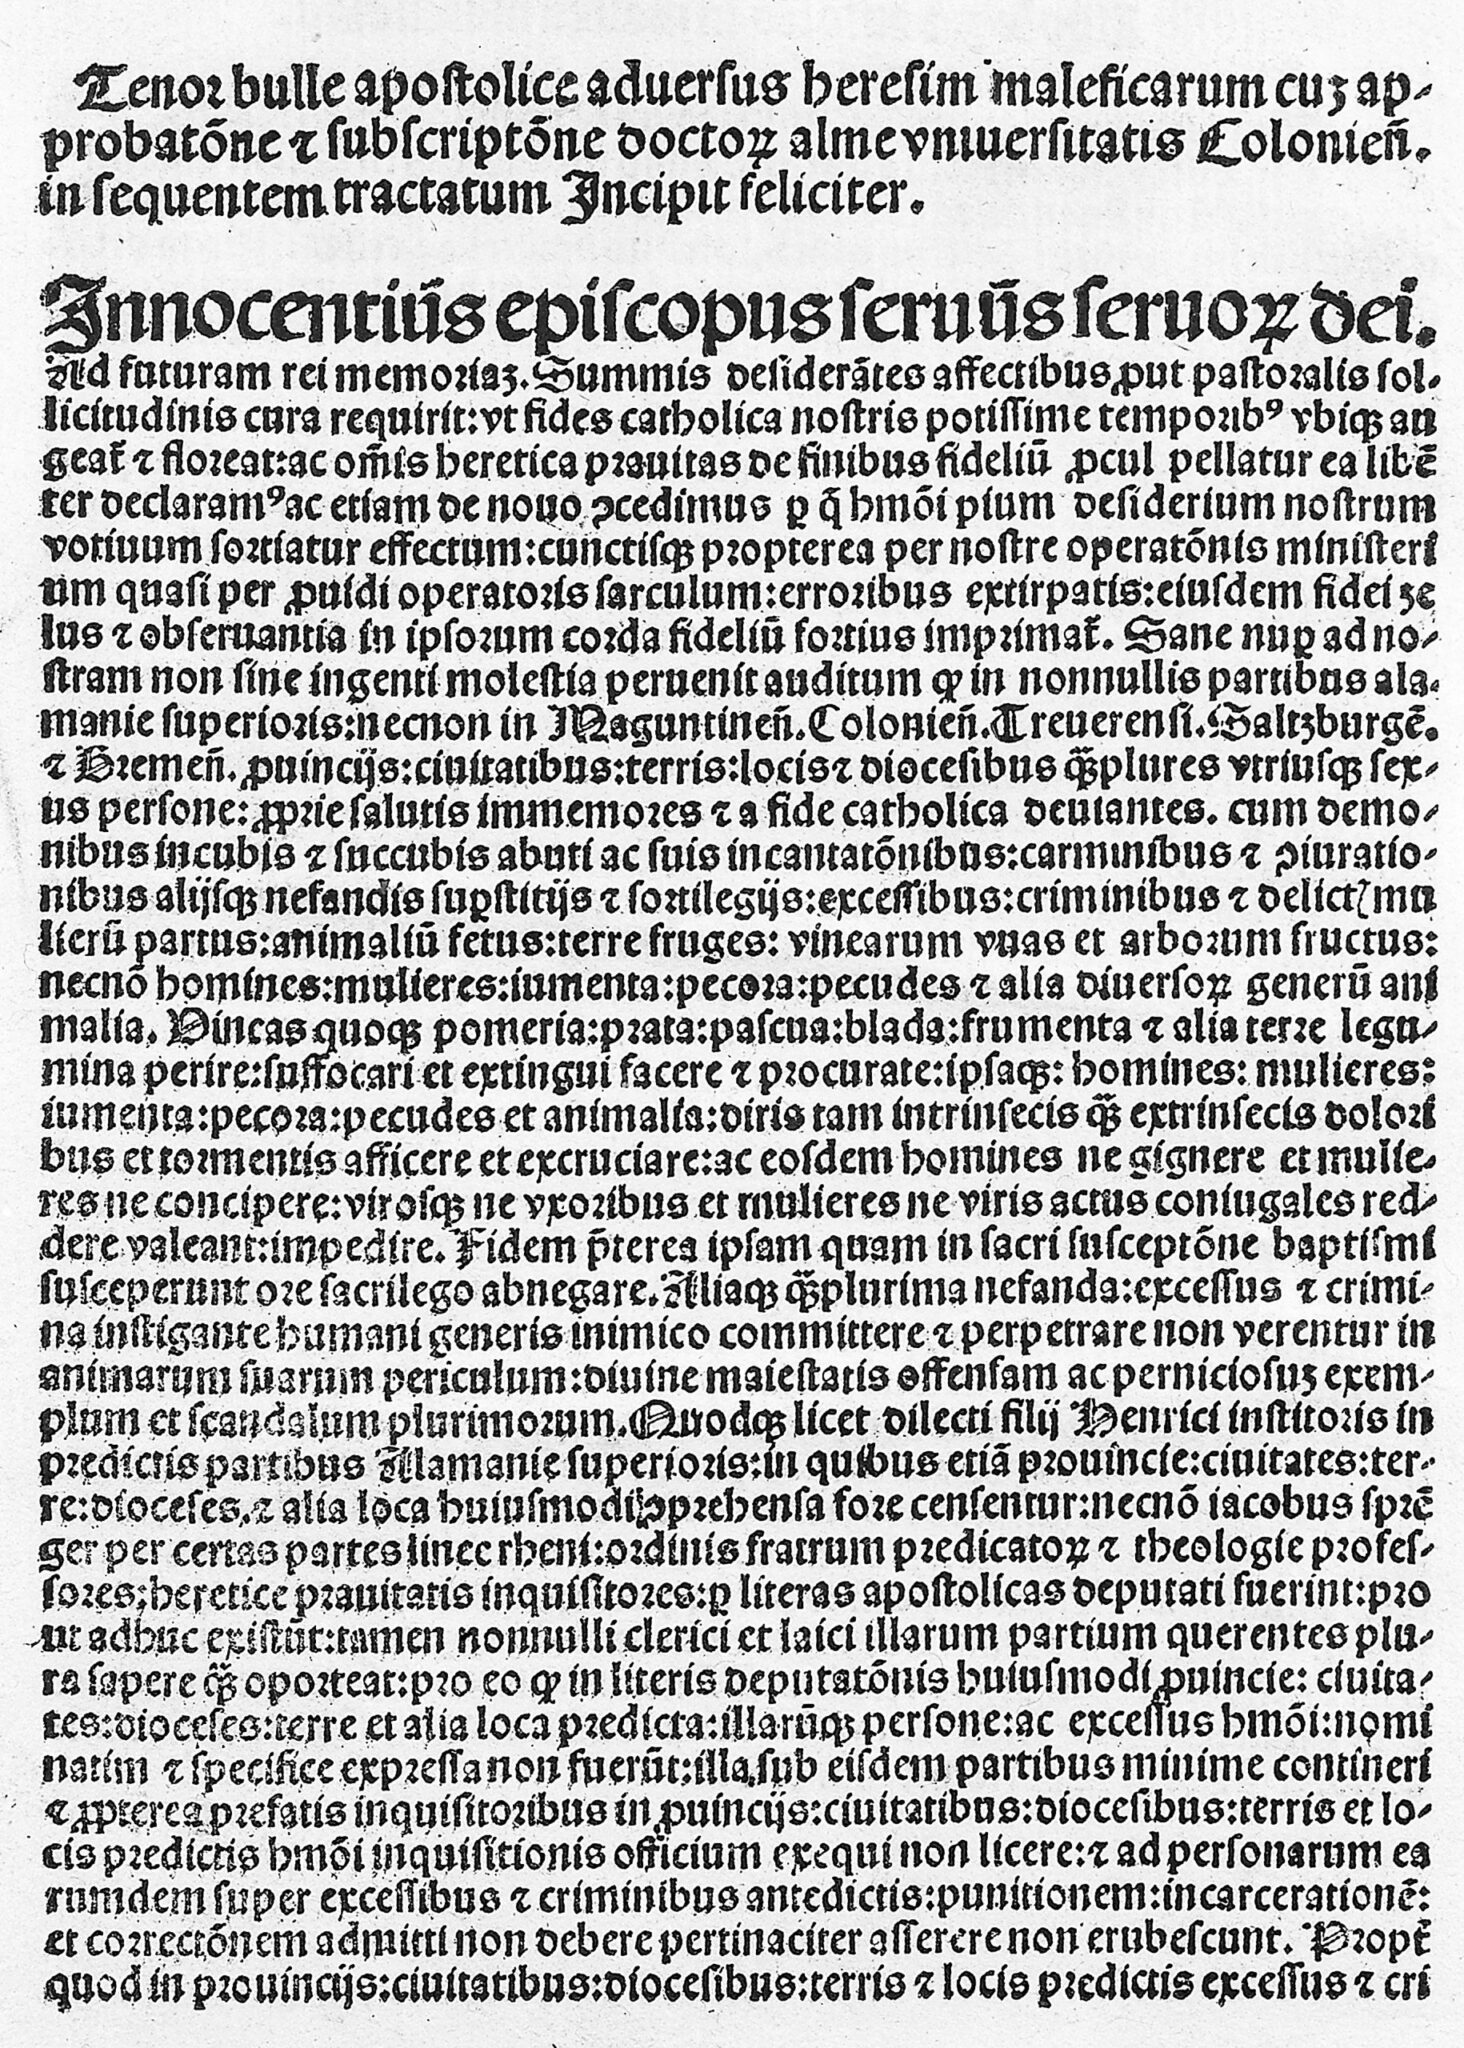 Malleus Maleficarum, début de la bulle d'Innocent VIII.